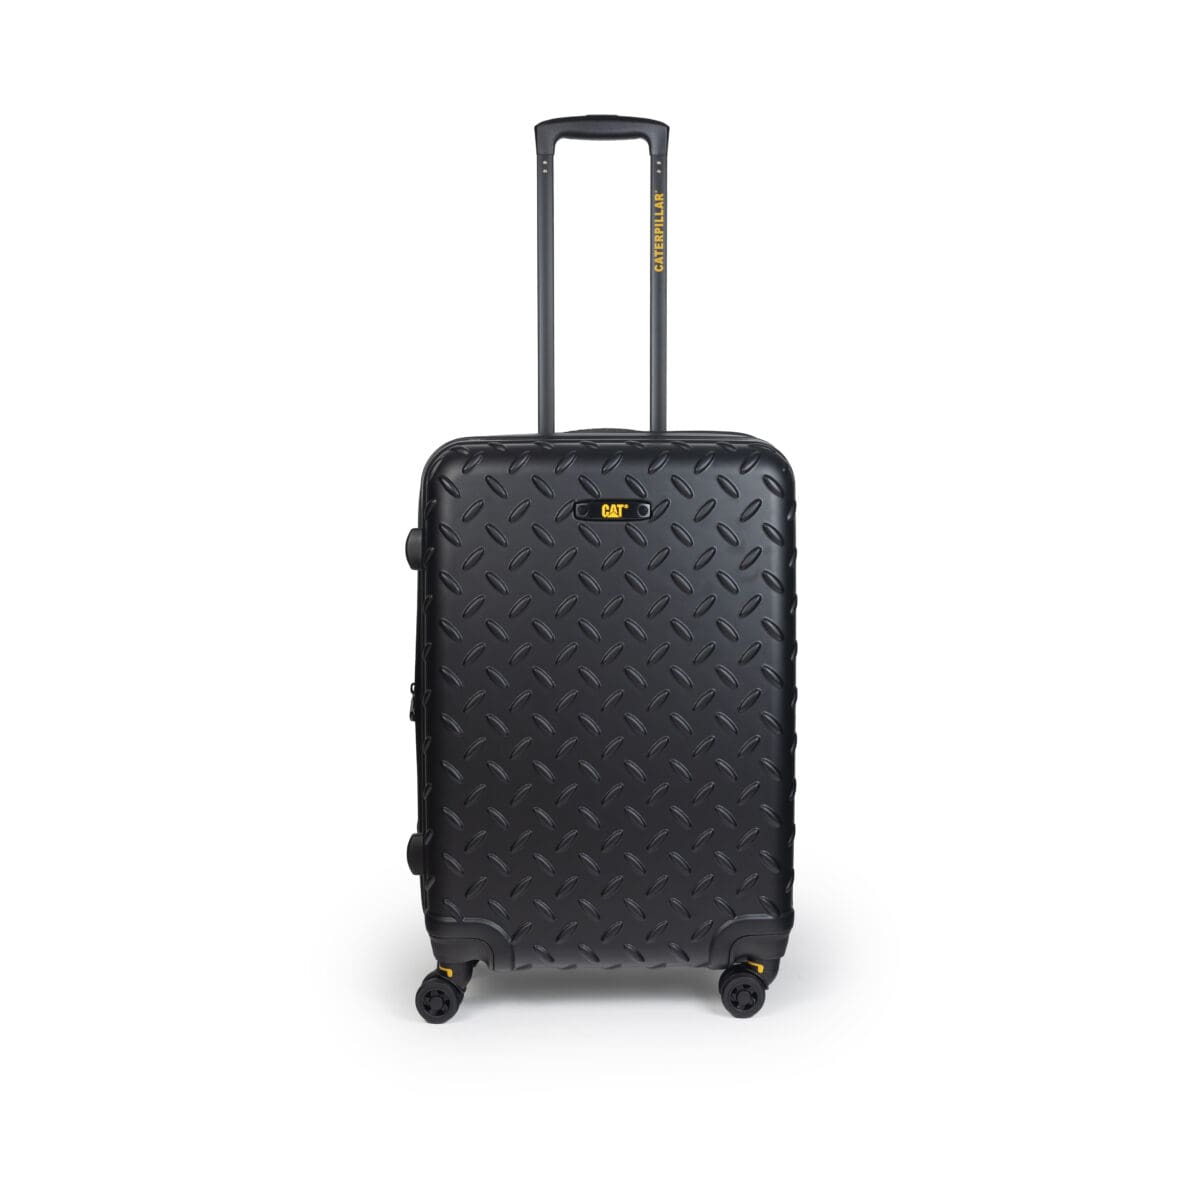 Βαλίτσα με διπλά ροδάκια , tsa lock από abs υλικό σε μαύρο χρώμα , επεκτάσιμη .